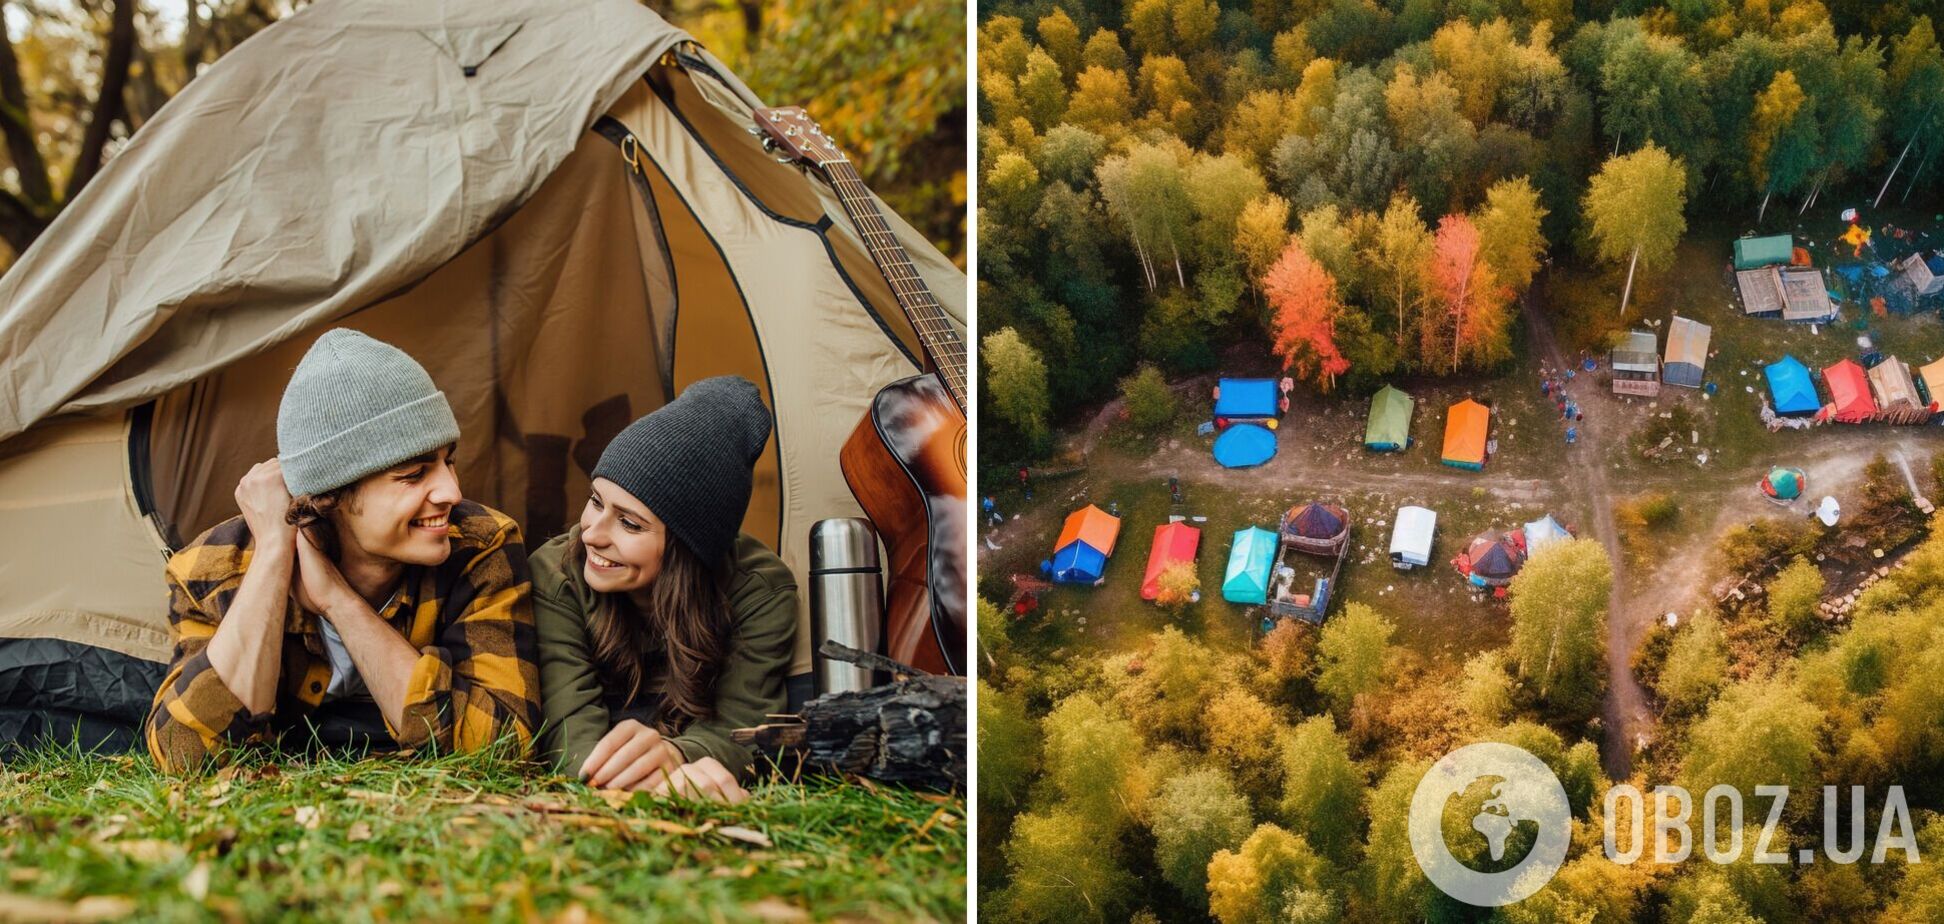 Едем отдыхать с палатками: топ-8 мест, где остановиться в Украине